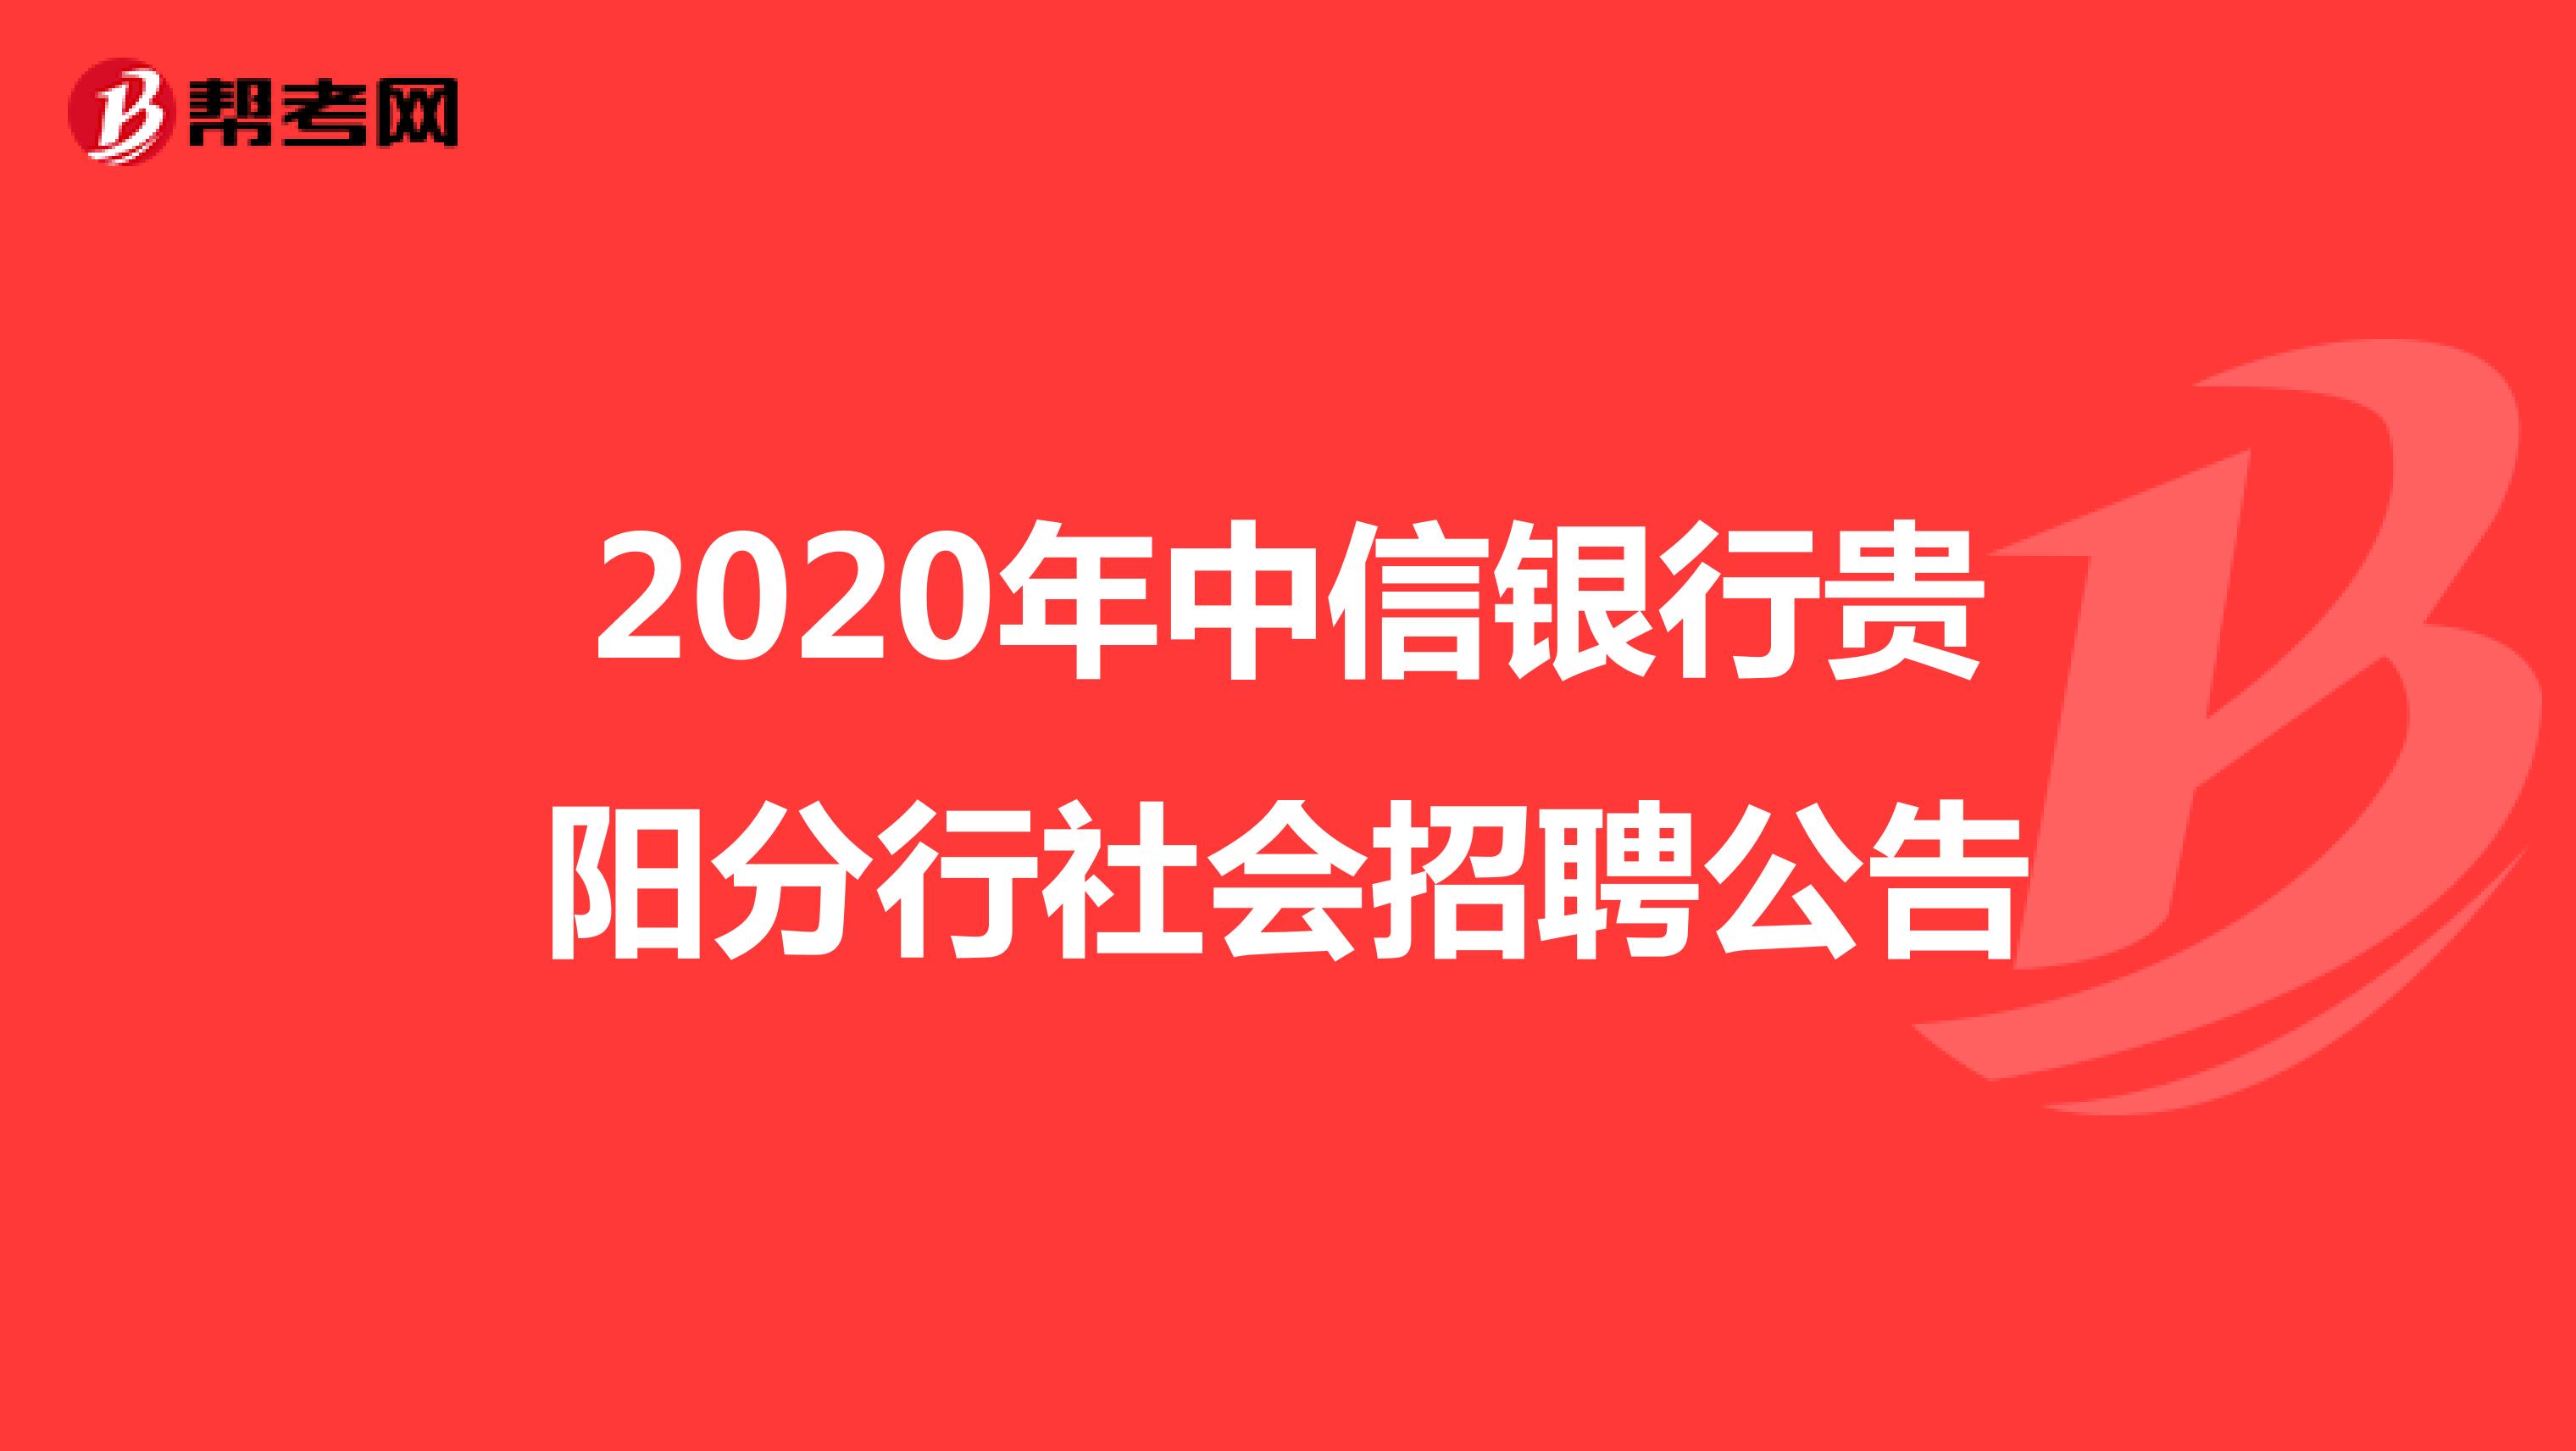 2020年中信银行贵阳分行社会招聘公告